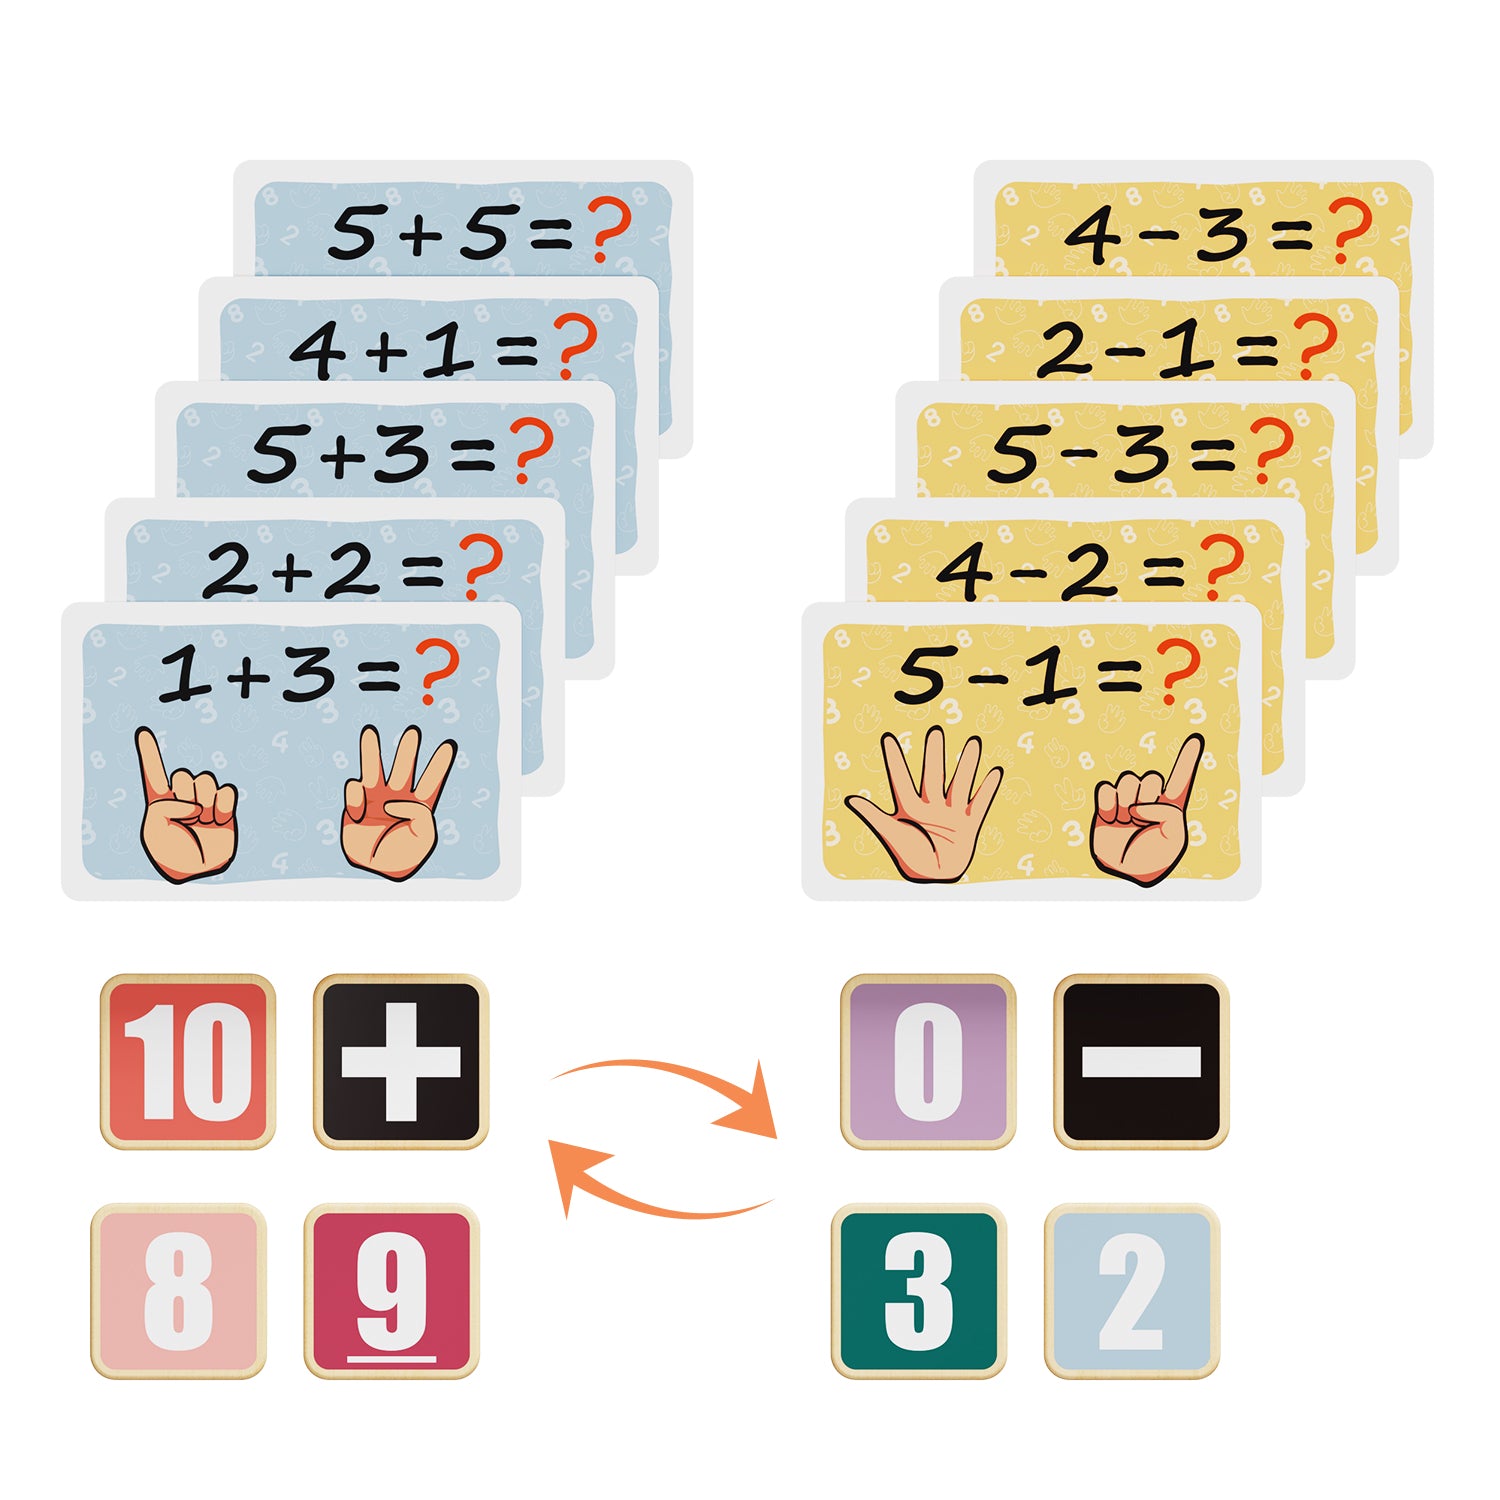 1 + 3 das macht 4! Mit Aufgabenkarten mit einfachen Additionen und Subtraktionen sowie inkludierten Zahlenplättchen aus Holz üben sich Kids spielerisch im ersten Rechnen. 